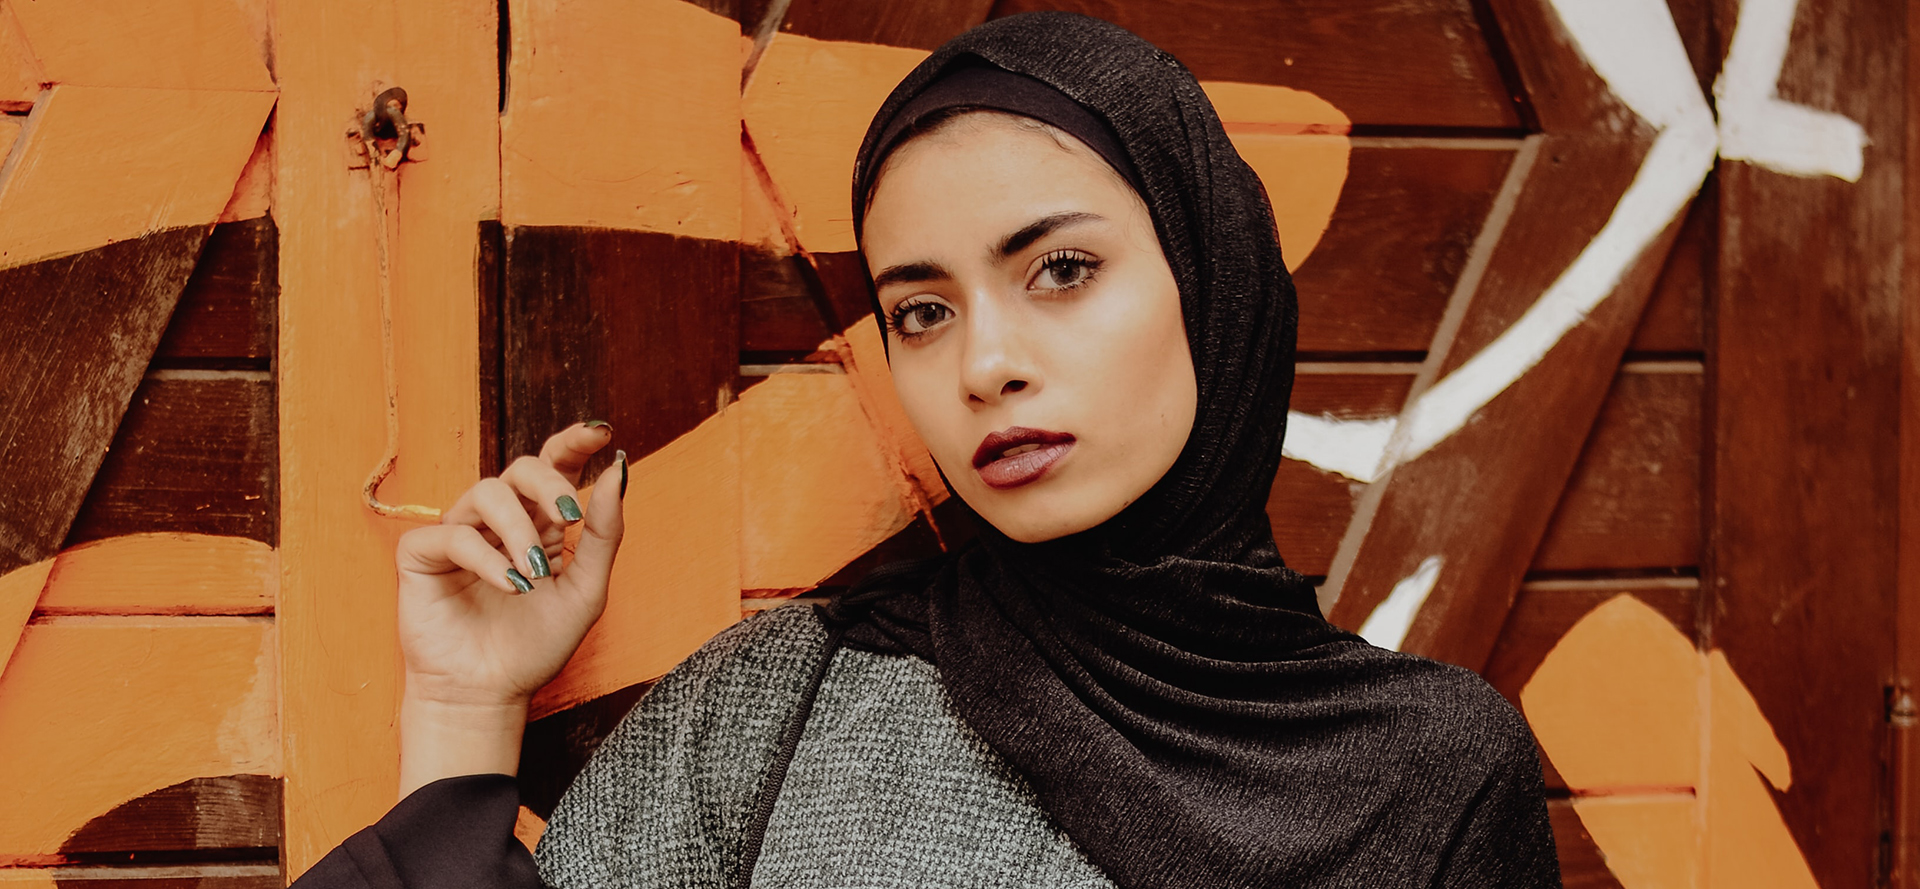 Mulher árabe com um lenço preto na cabeça.